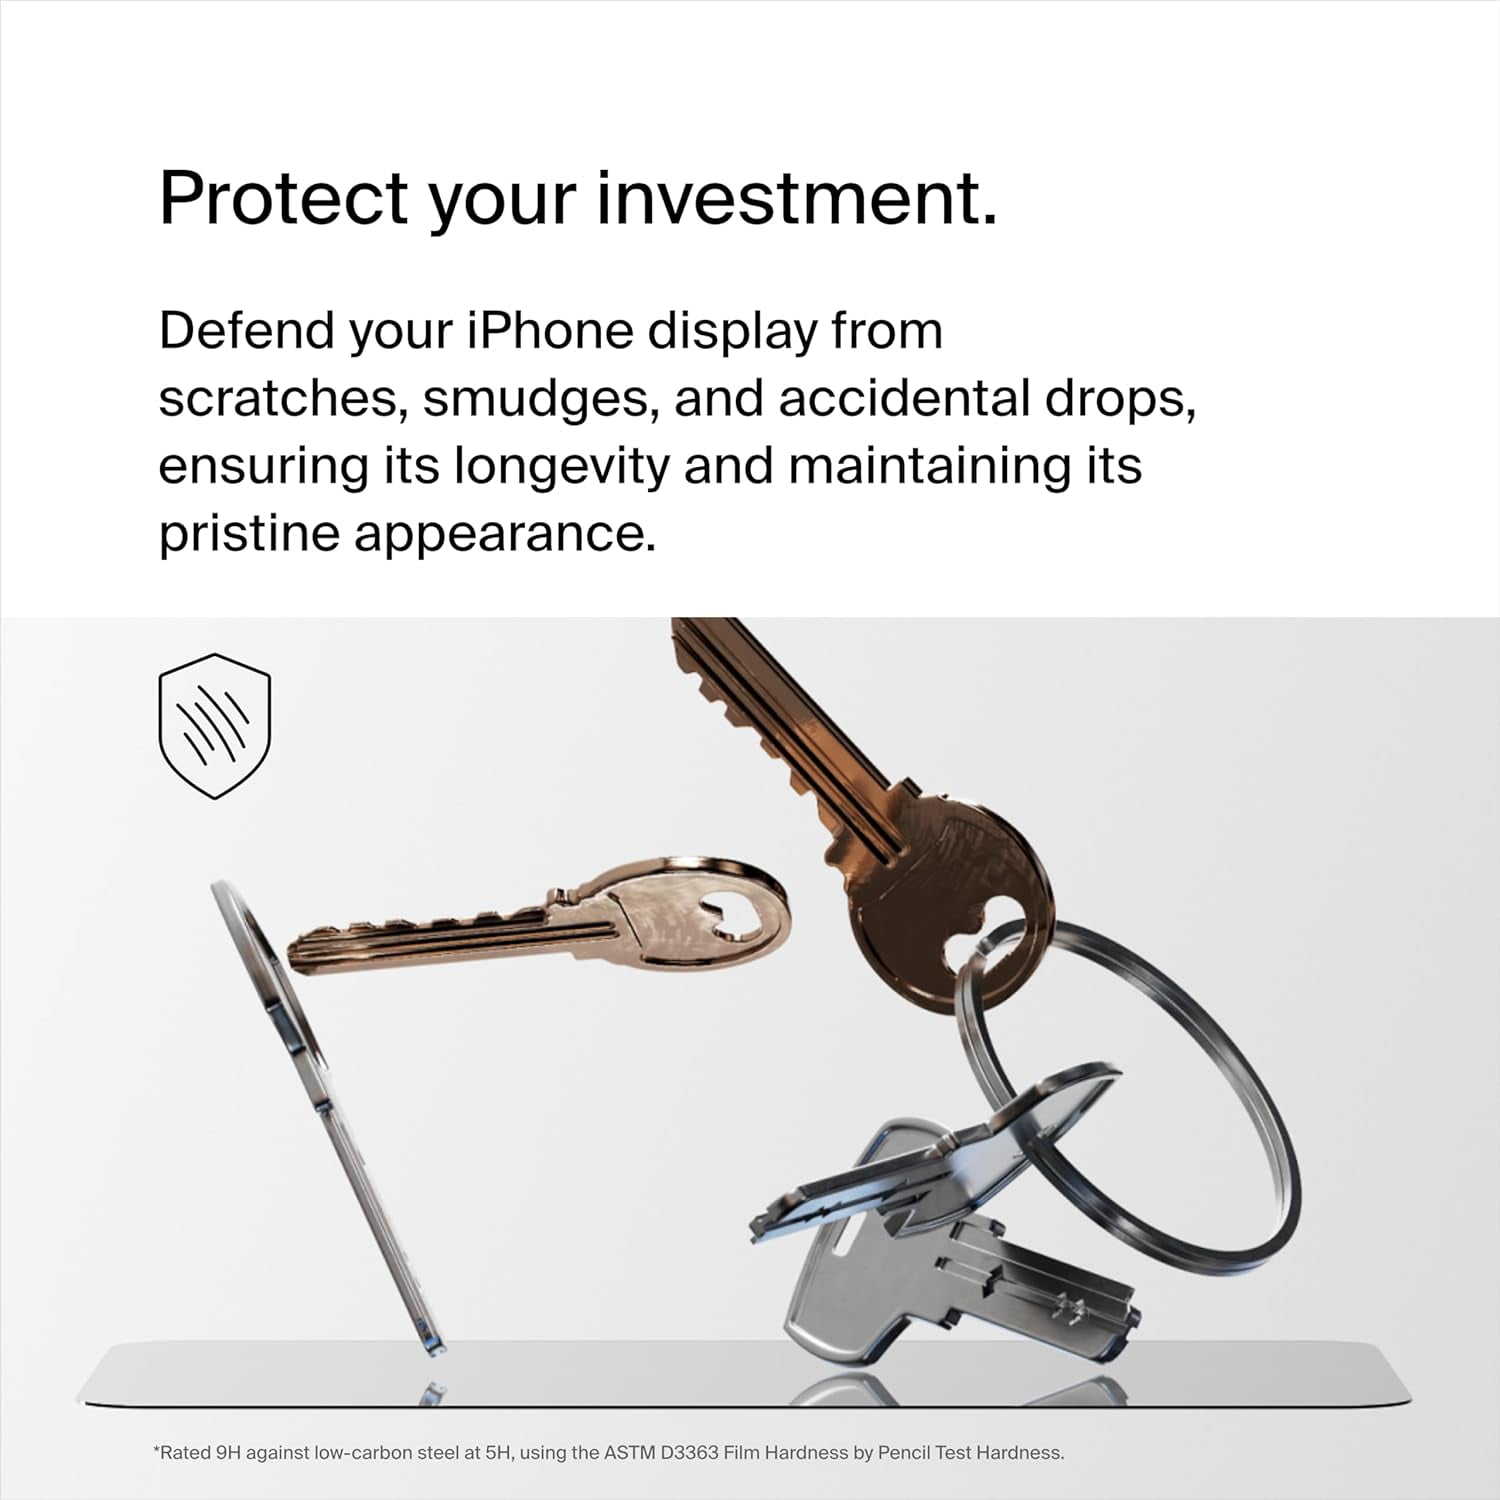 Belkin ScreenForce UltraGlass 2 pour iPhone 15 Plus - Protection écran -  LDLC